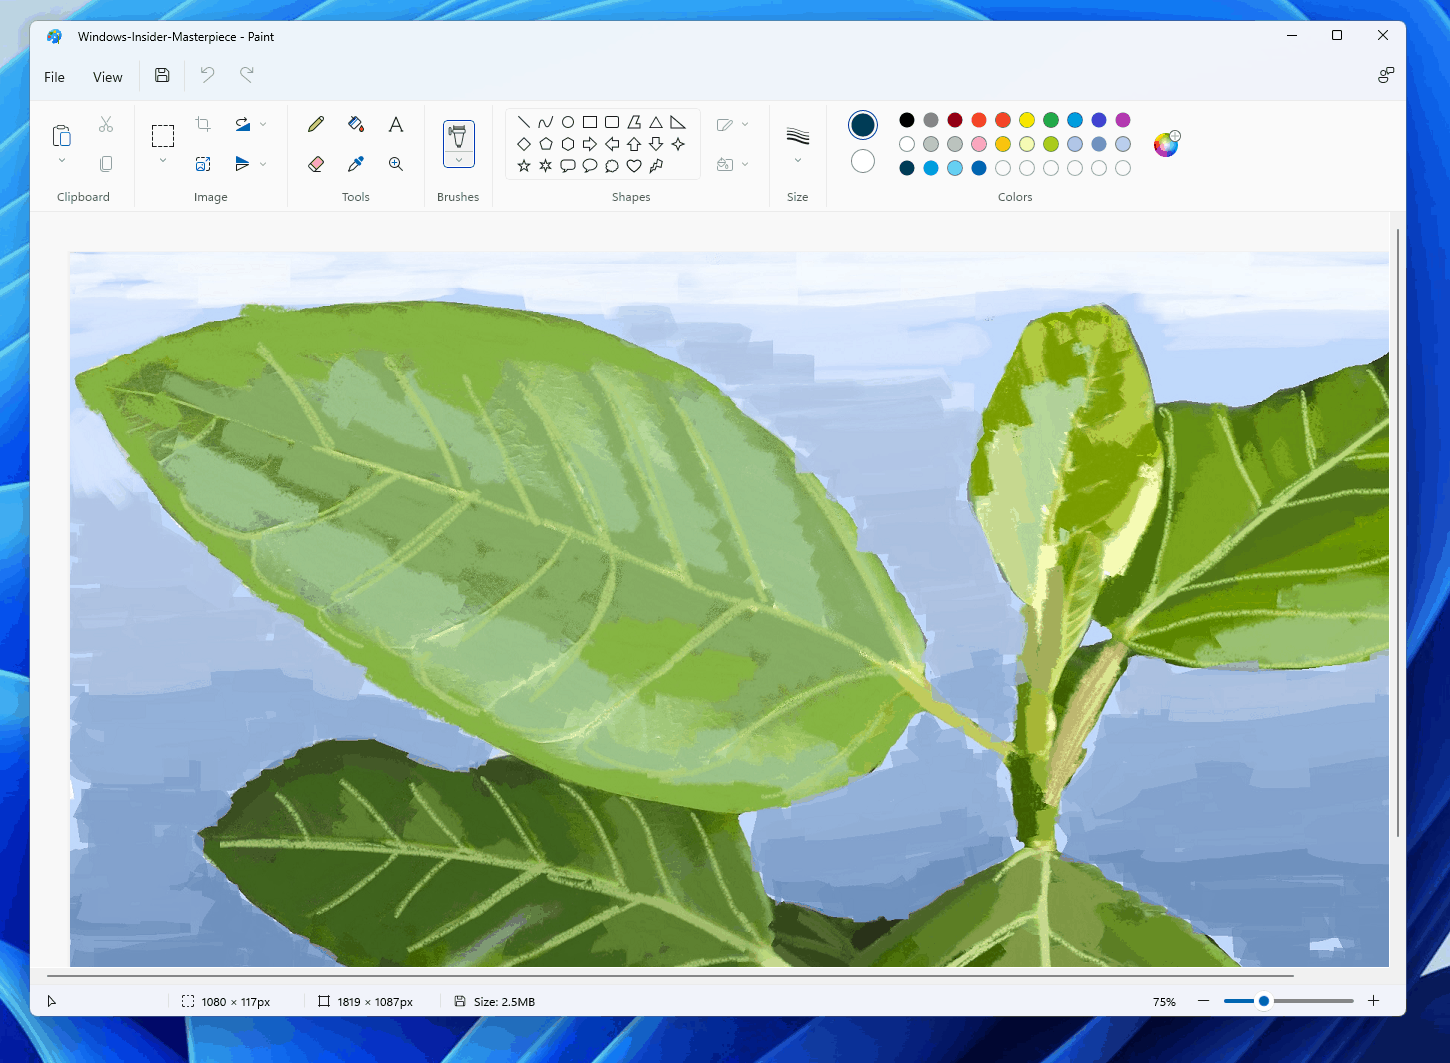 Paint mới trên Windows 11 mang đến cho bạn những tính năng cải tiến và giao diện thân thiện hơn nhiều so với phiên bản trước. Bây giờ bạn có thể thiết kế các hình ảnh ấn tượng hơn bao giờ hết với Paint mới. Hãy xem hình ảnh để biết thêm chi tiết về cách sử dụng Paint mới trên Windows 11 và trổ tài sáng tạo của mình.